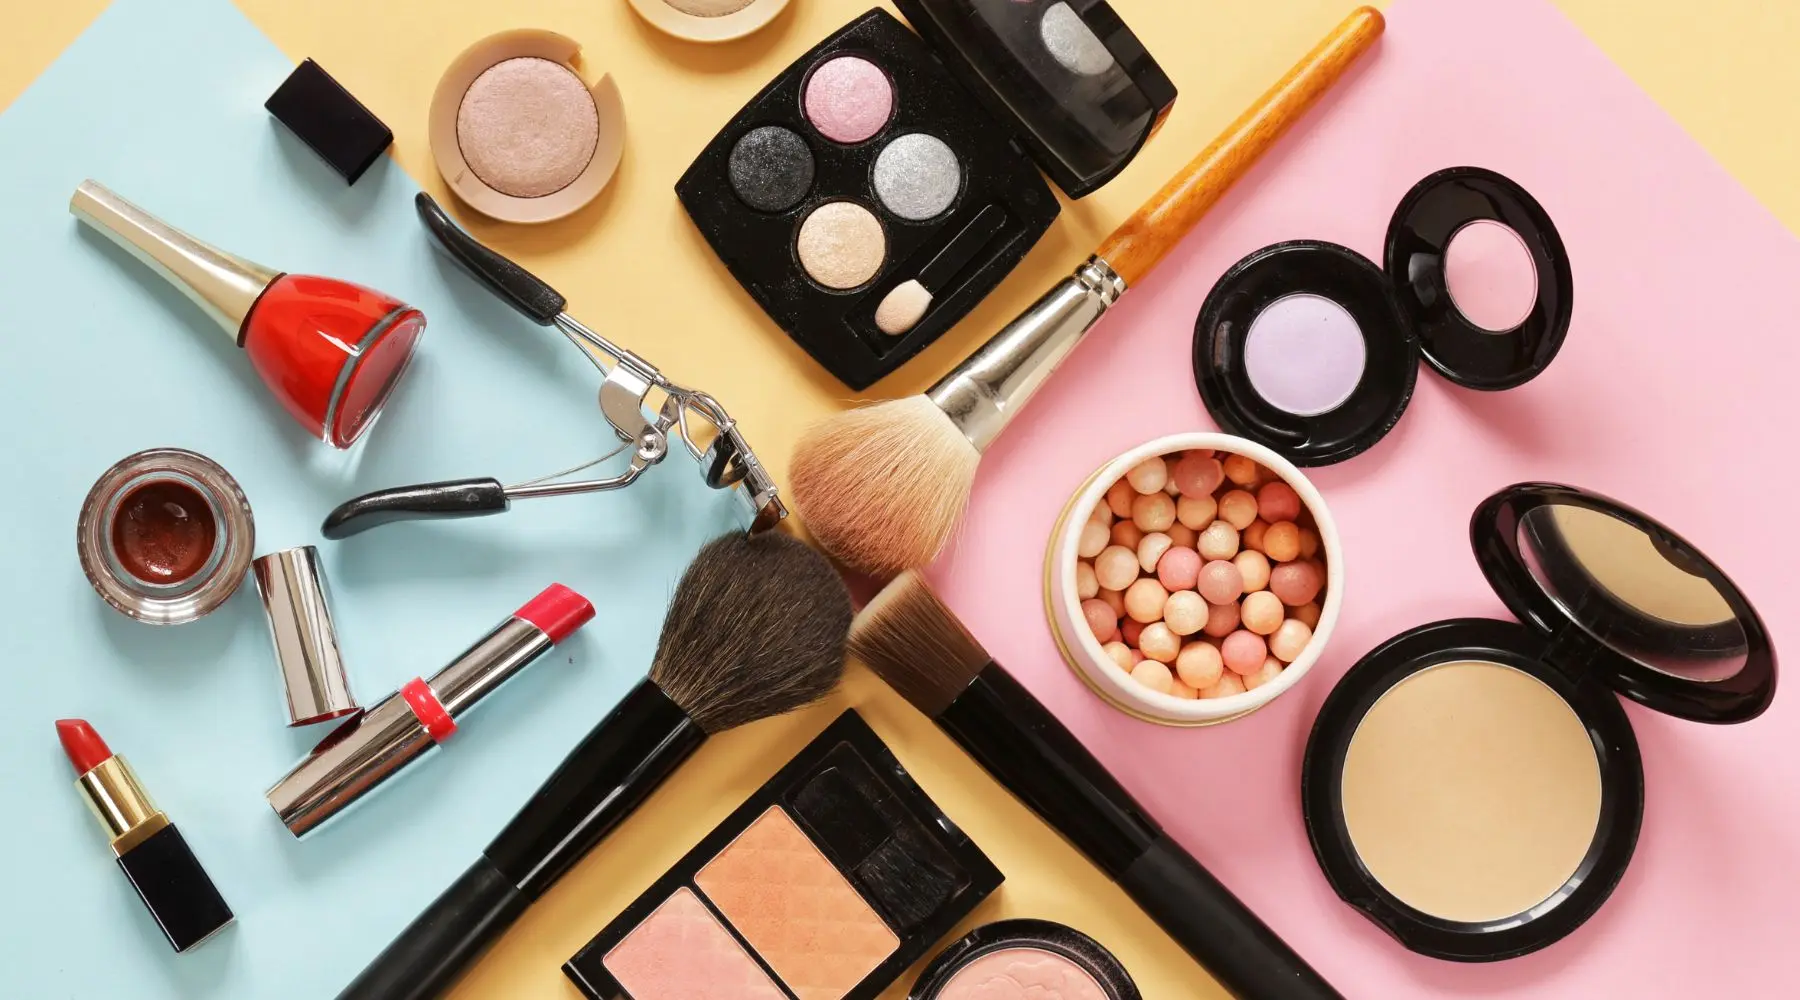 Top sites to buy makeup online